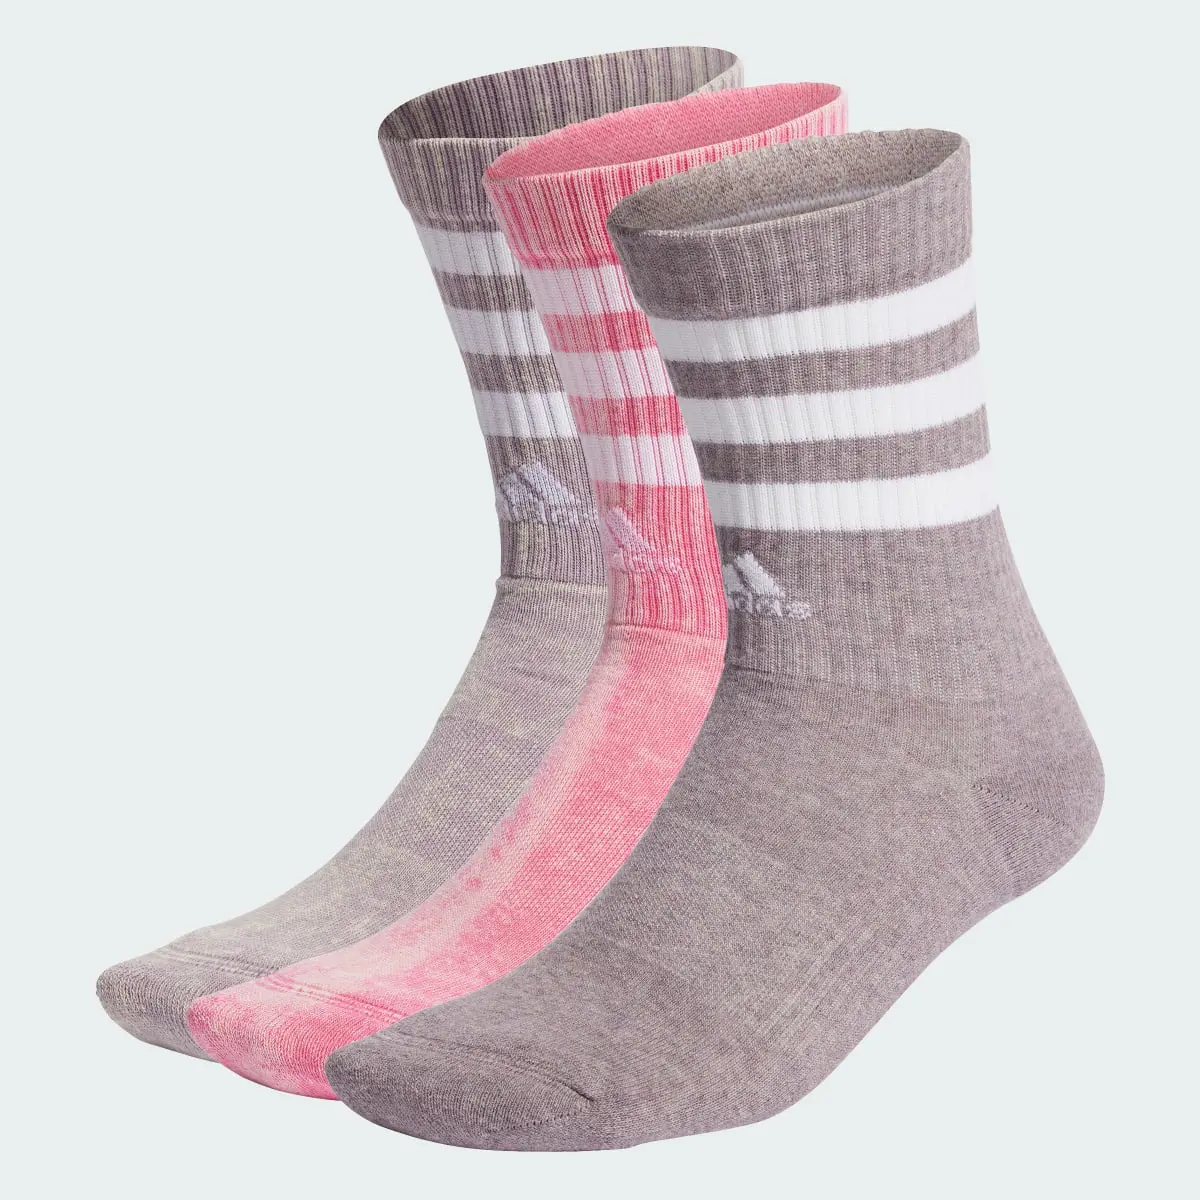 Adidas 3-Streifen Stonewash Crew Socken, 3 Paar. 2